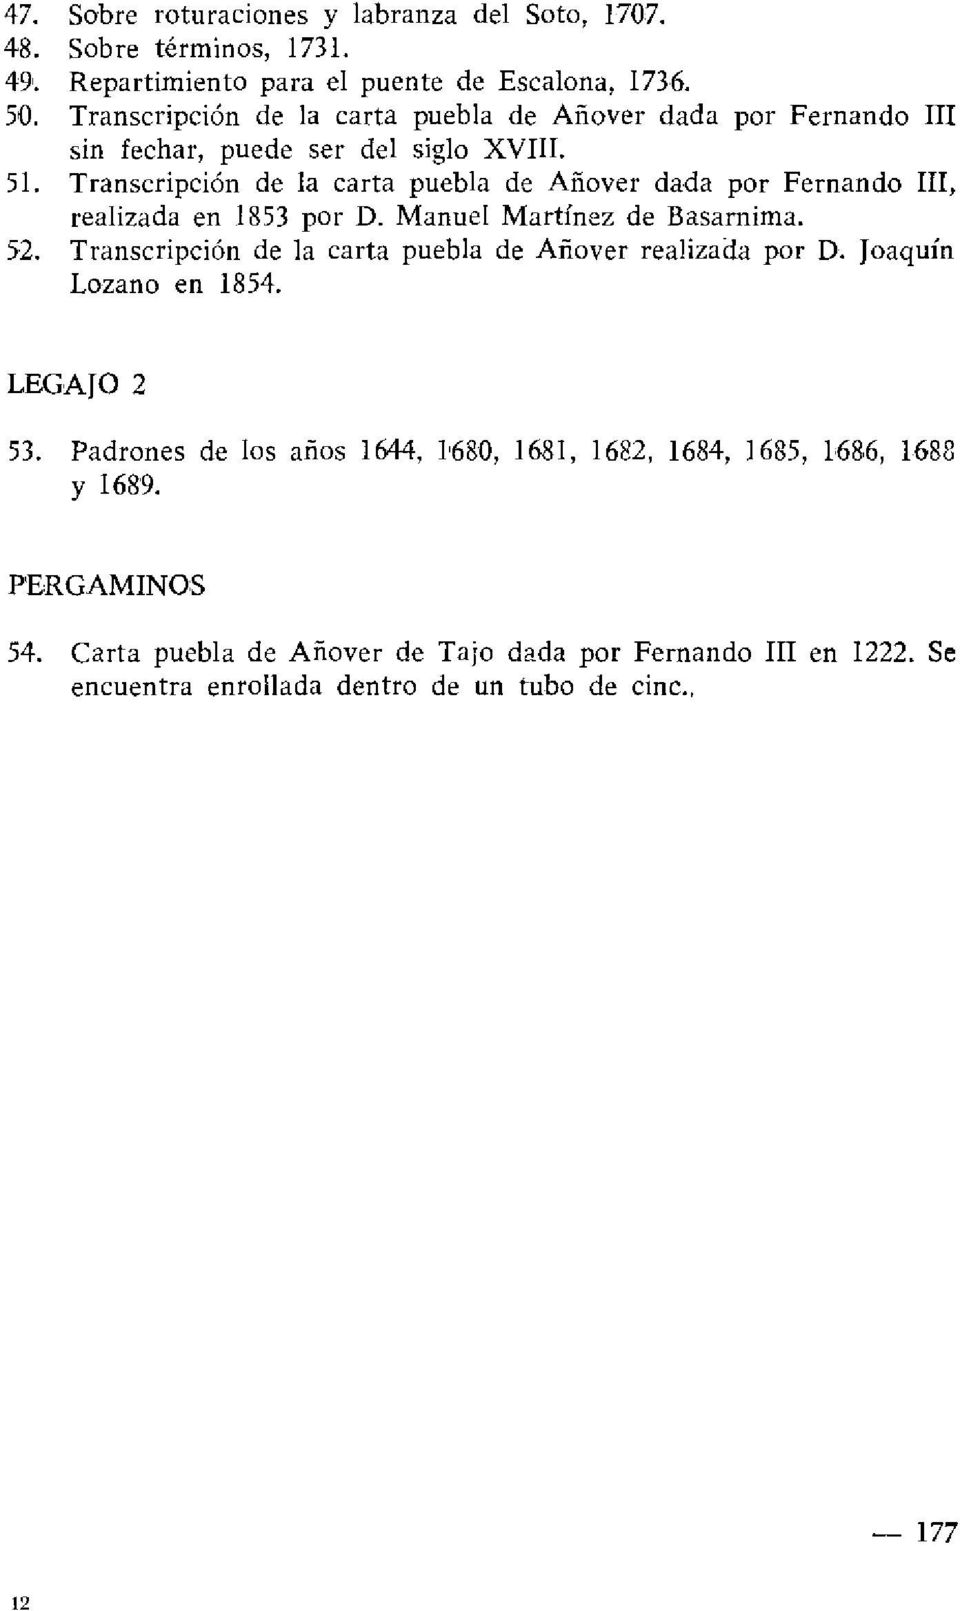 Transcripción de la carta puebla de Añover dada por Fernando III, realizada en 1853 por D. Manuel Martínez de Basarnima. 52.